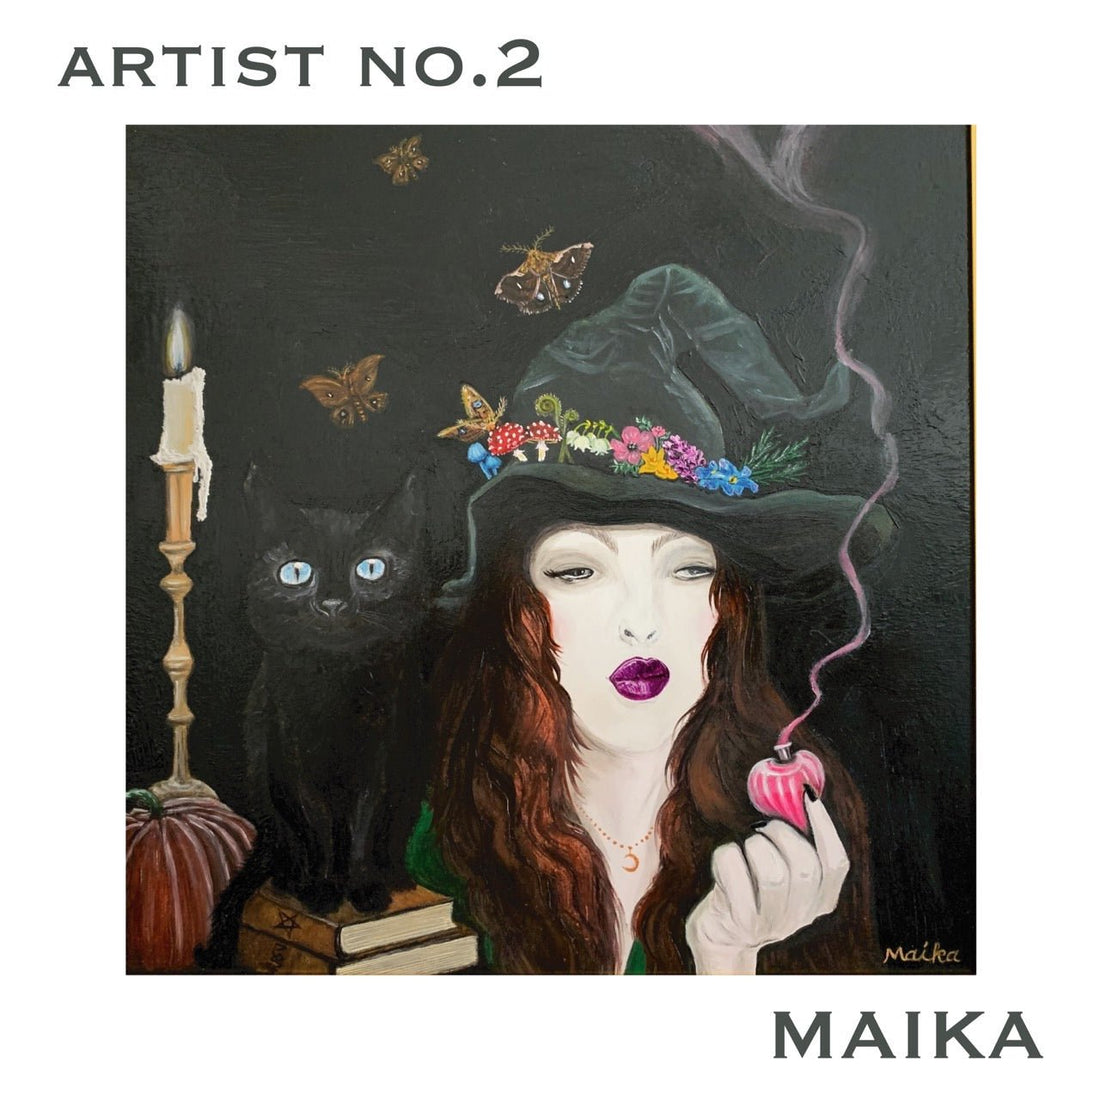 アーティストが自身の作品を出品できるプラットフォーム 「FROM ARTIST」、MAIKA様の掲載が決定 - FROM ARTIST